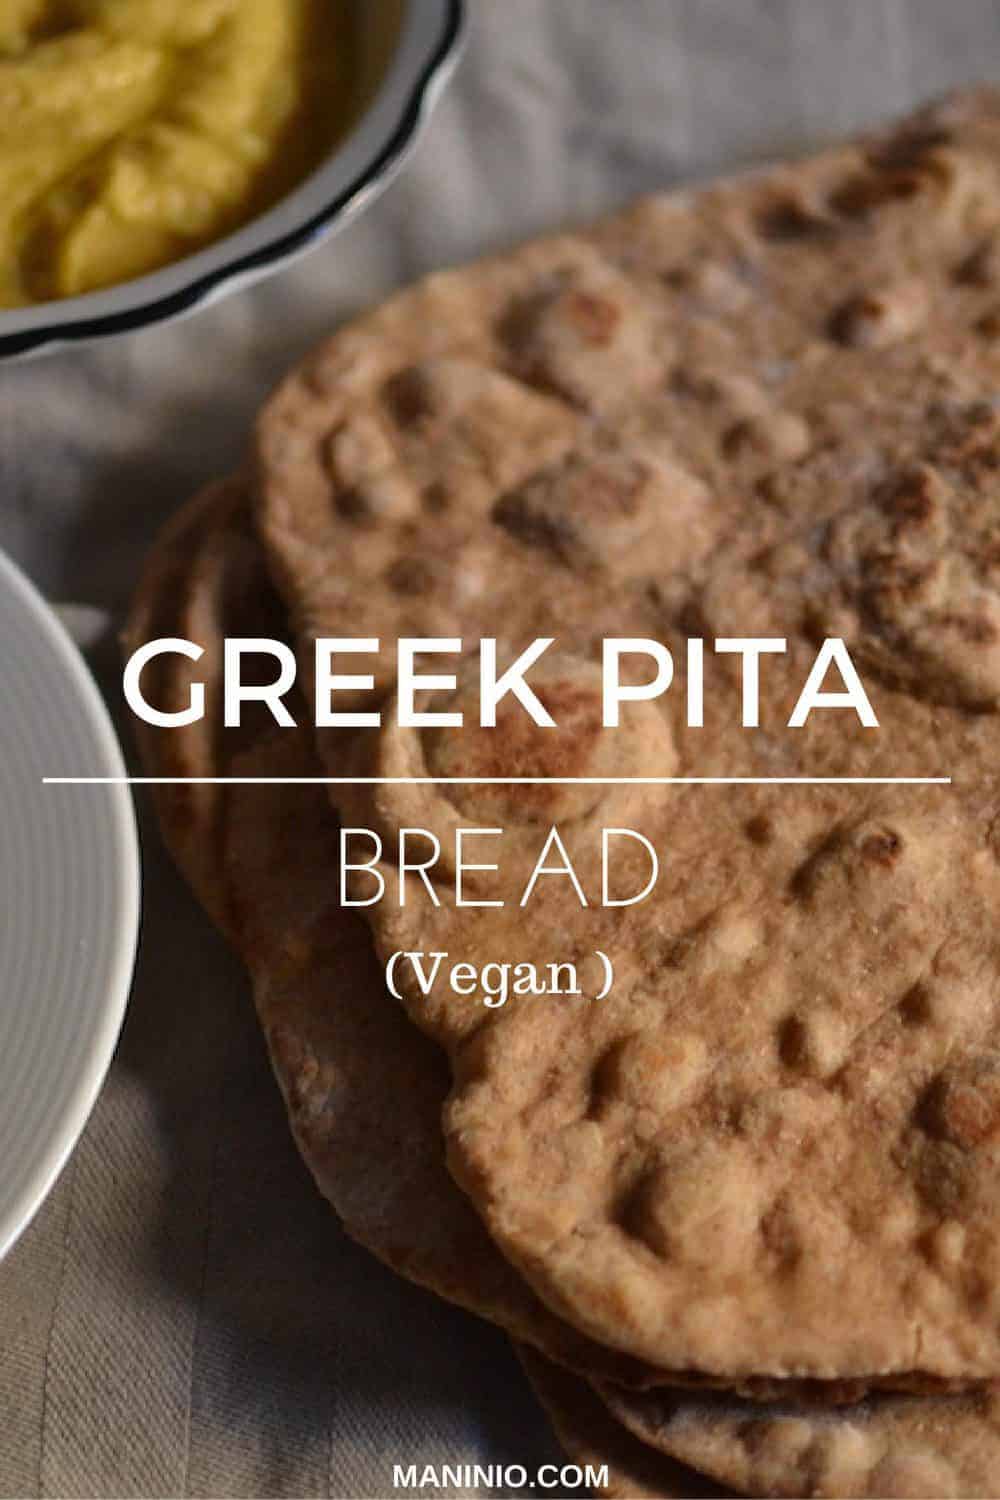 Greek pita bread